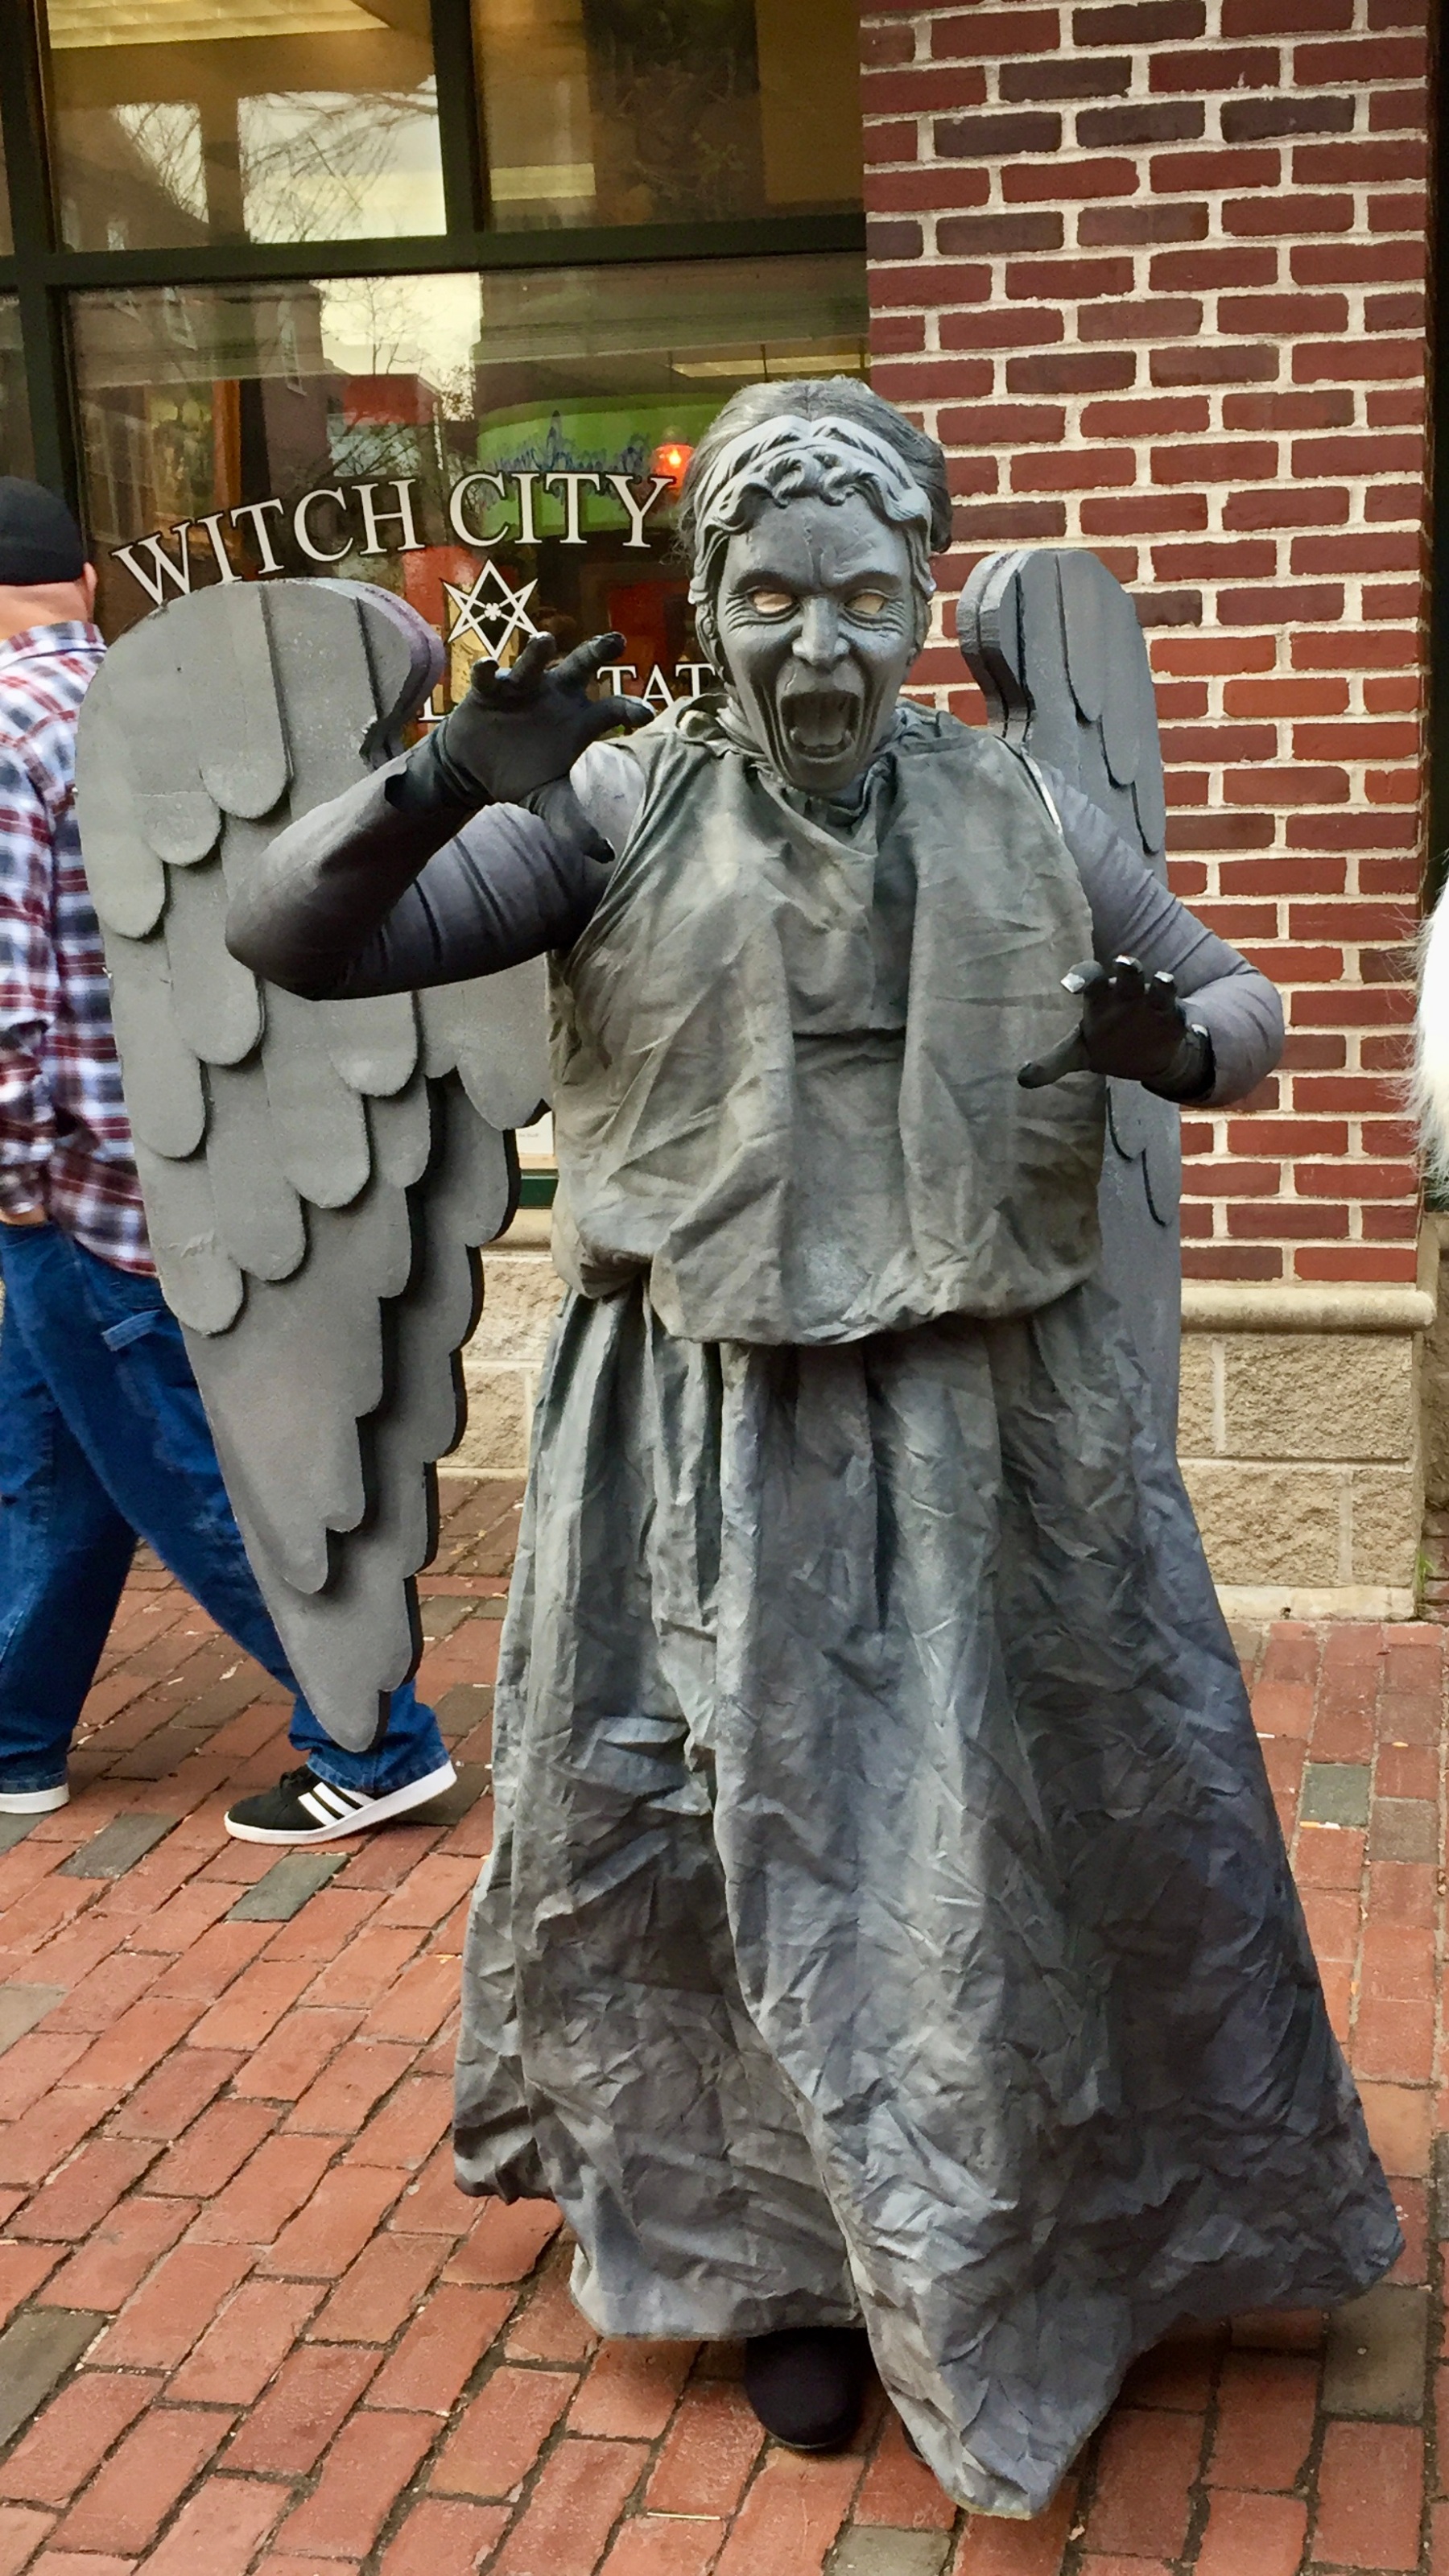 A witch statue in Salem, MA